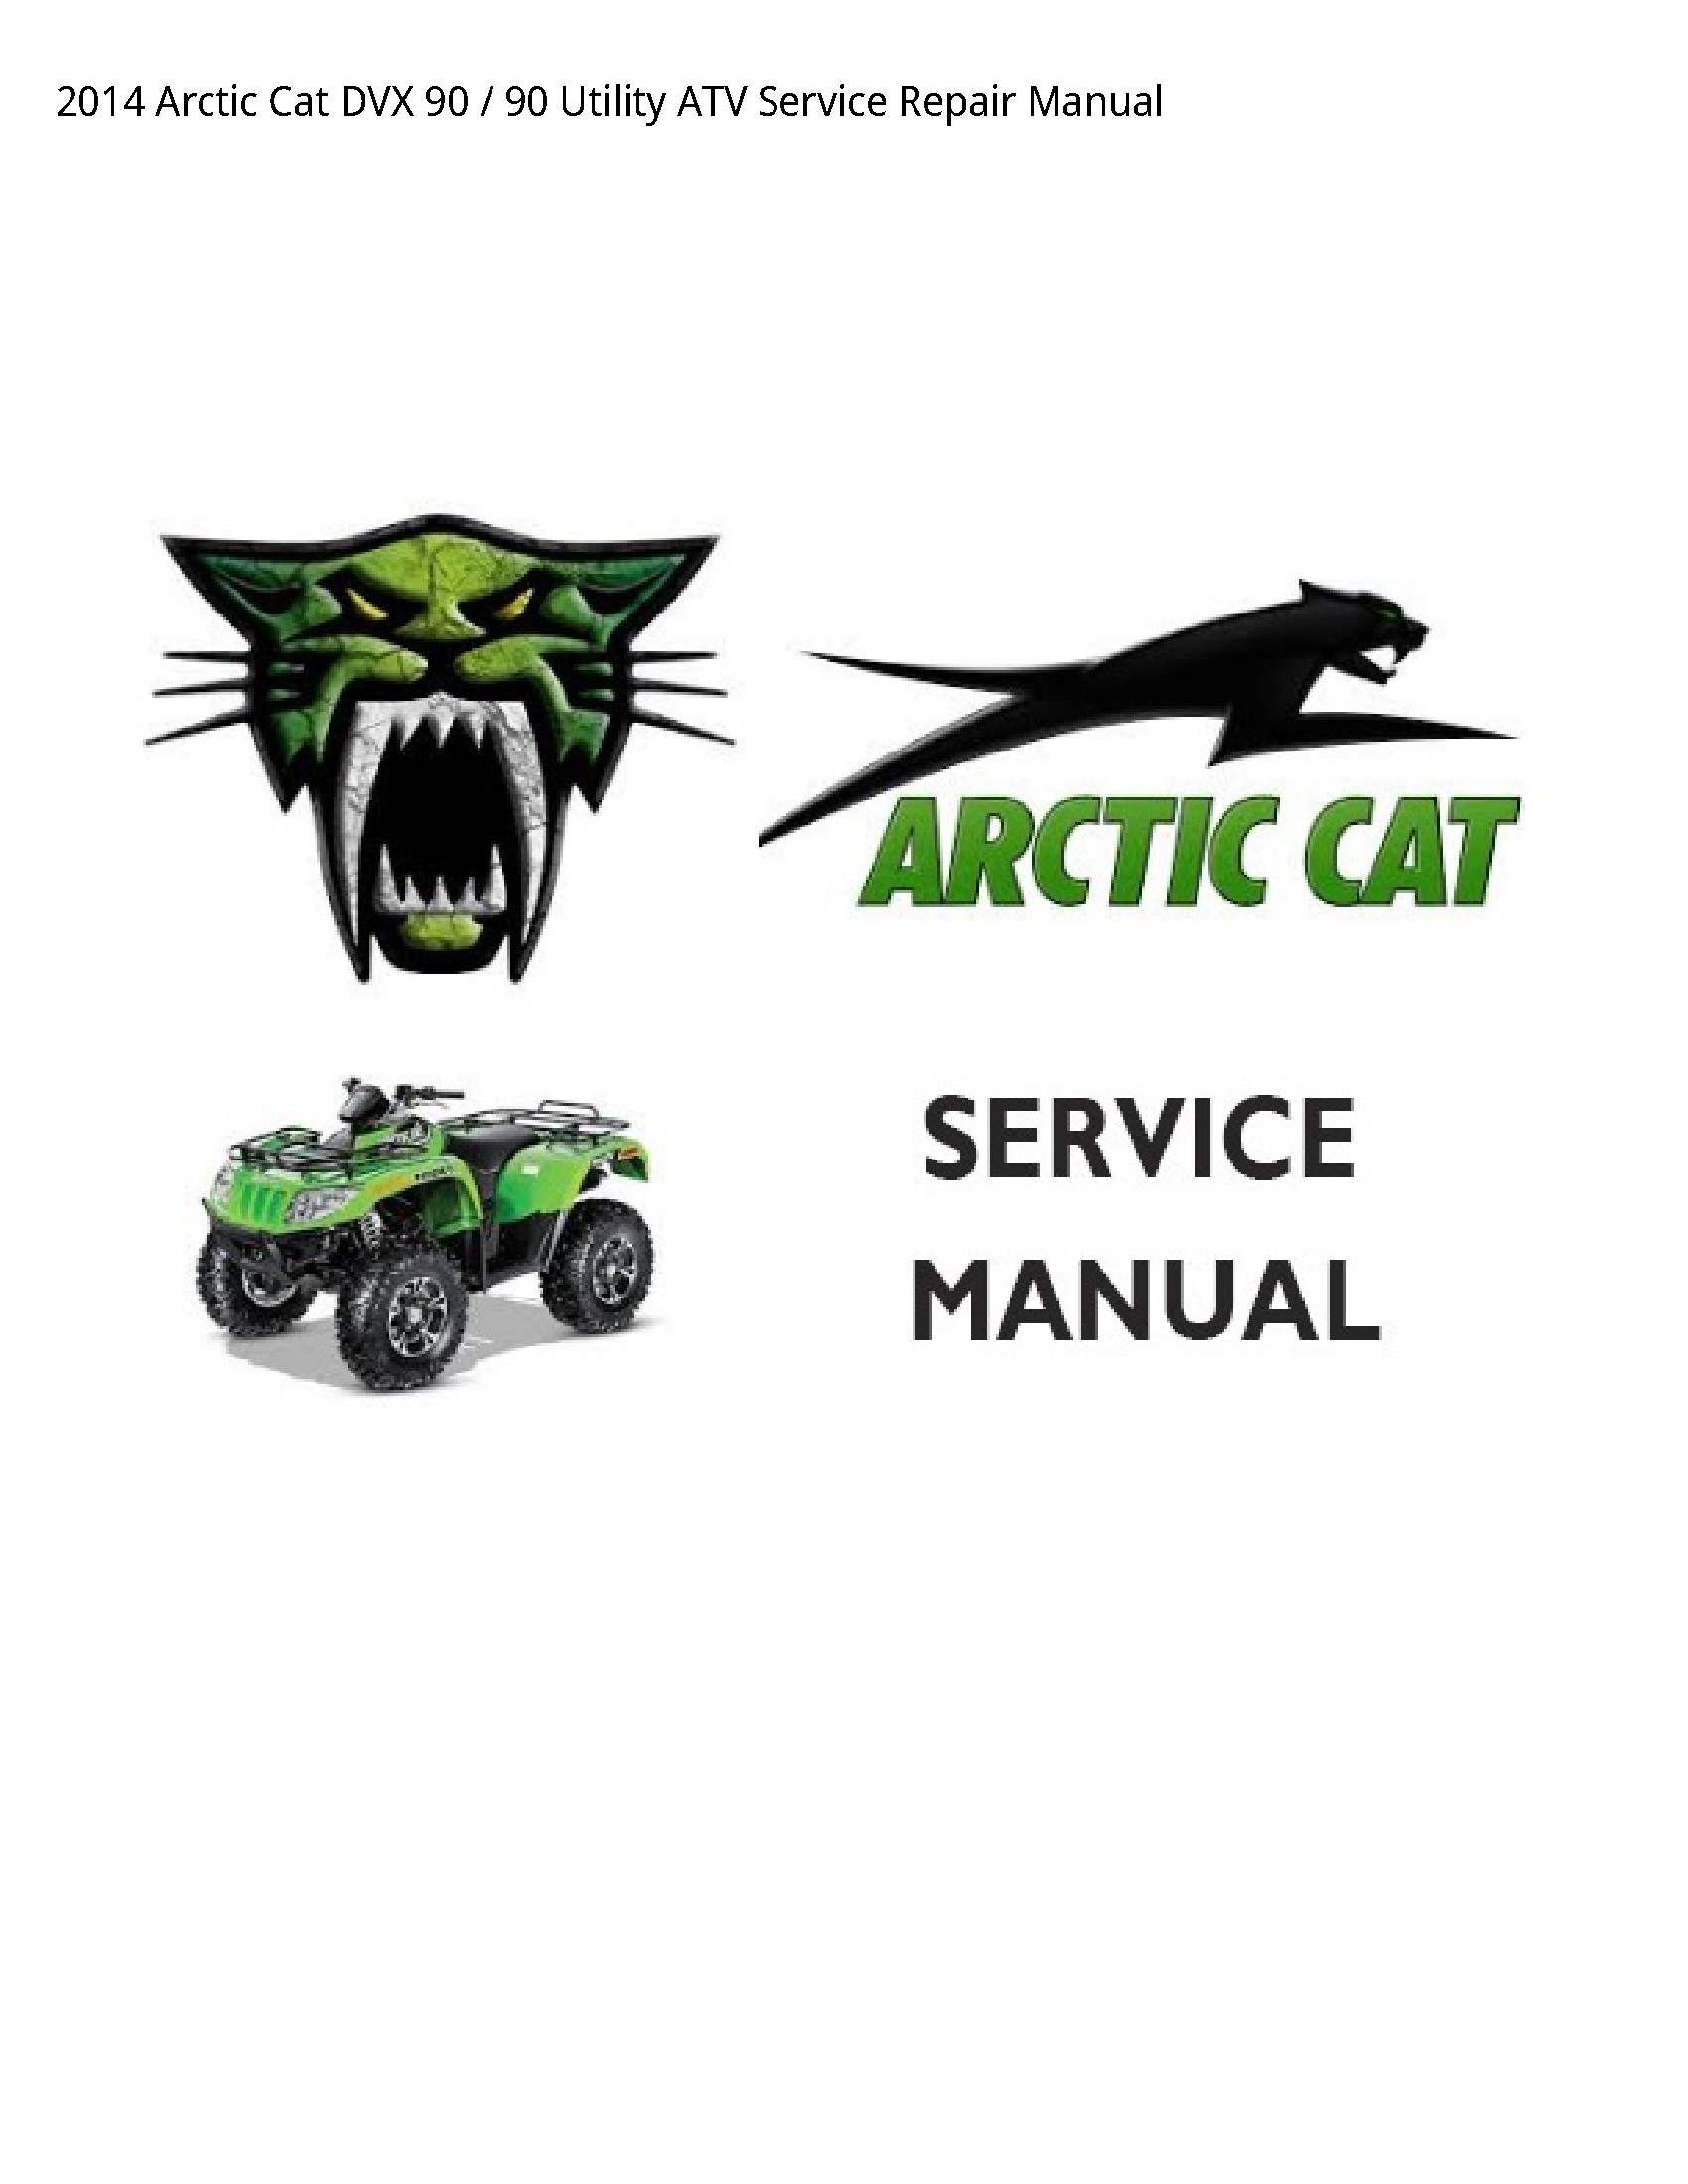 Arctic Cat 90 DVX Utility ATV manual